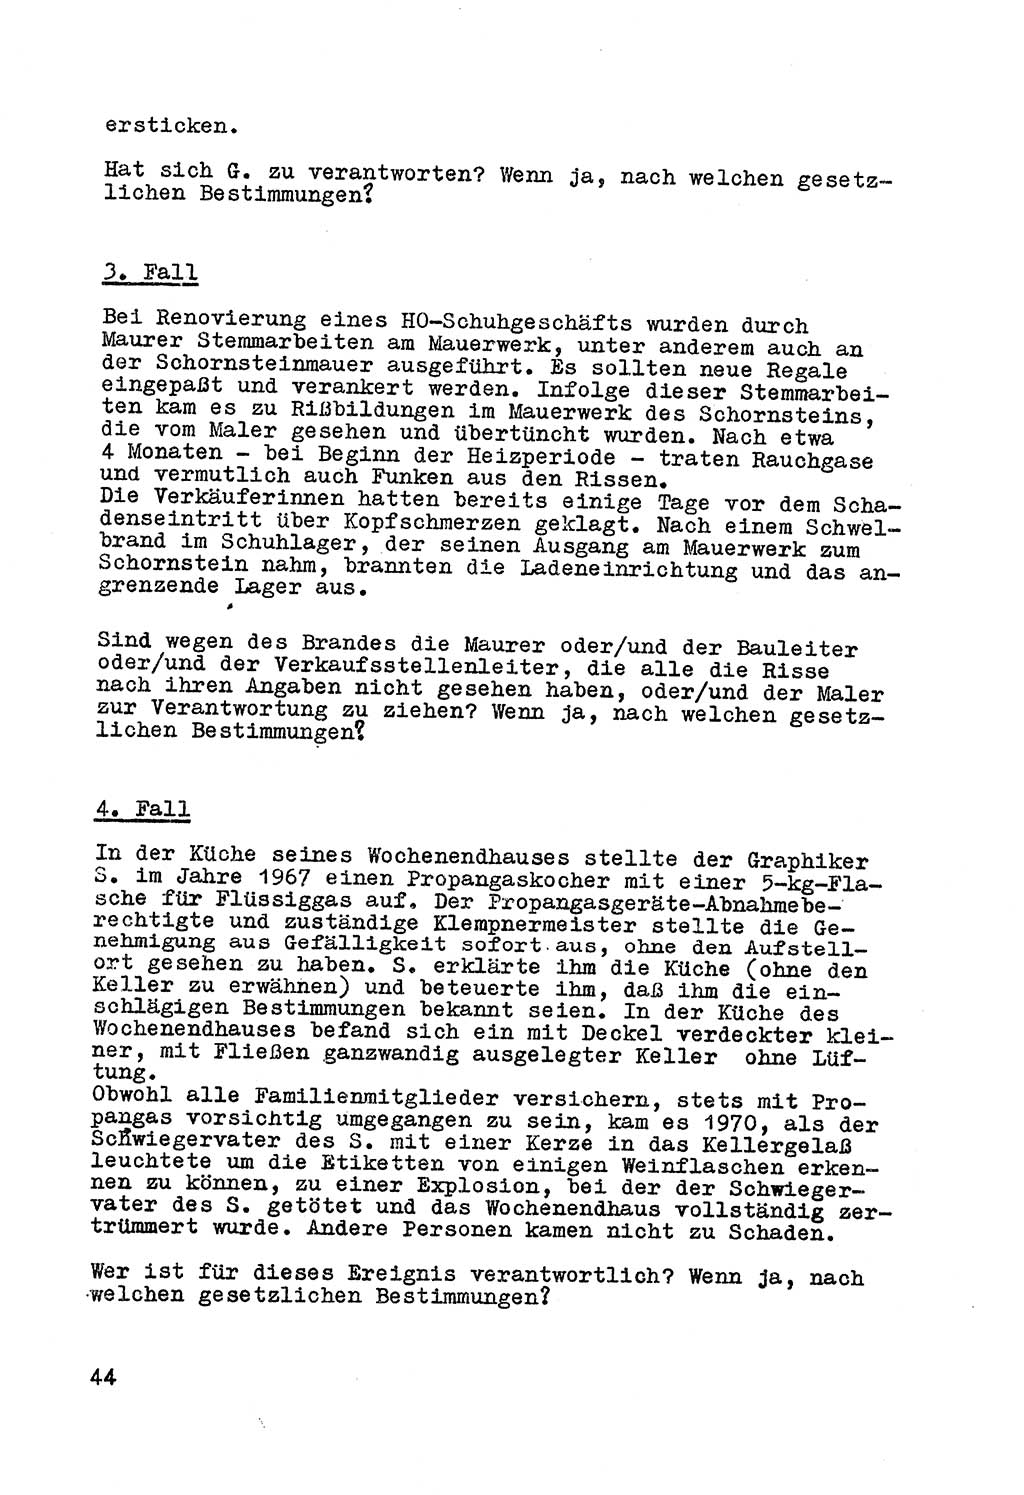 Strafrecht der DDR (Deutsche Demokratische Republik), Besonderer Teil, Lehrmaterial, Heft 7 1970, Seite 44 (Strafr. DDR BT Lehrmat. H. 7 1970, S. 44)